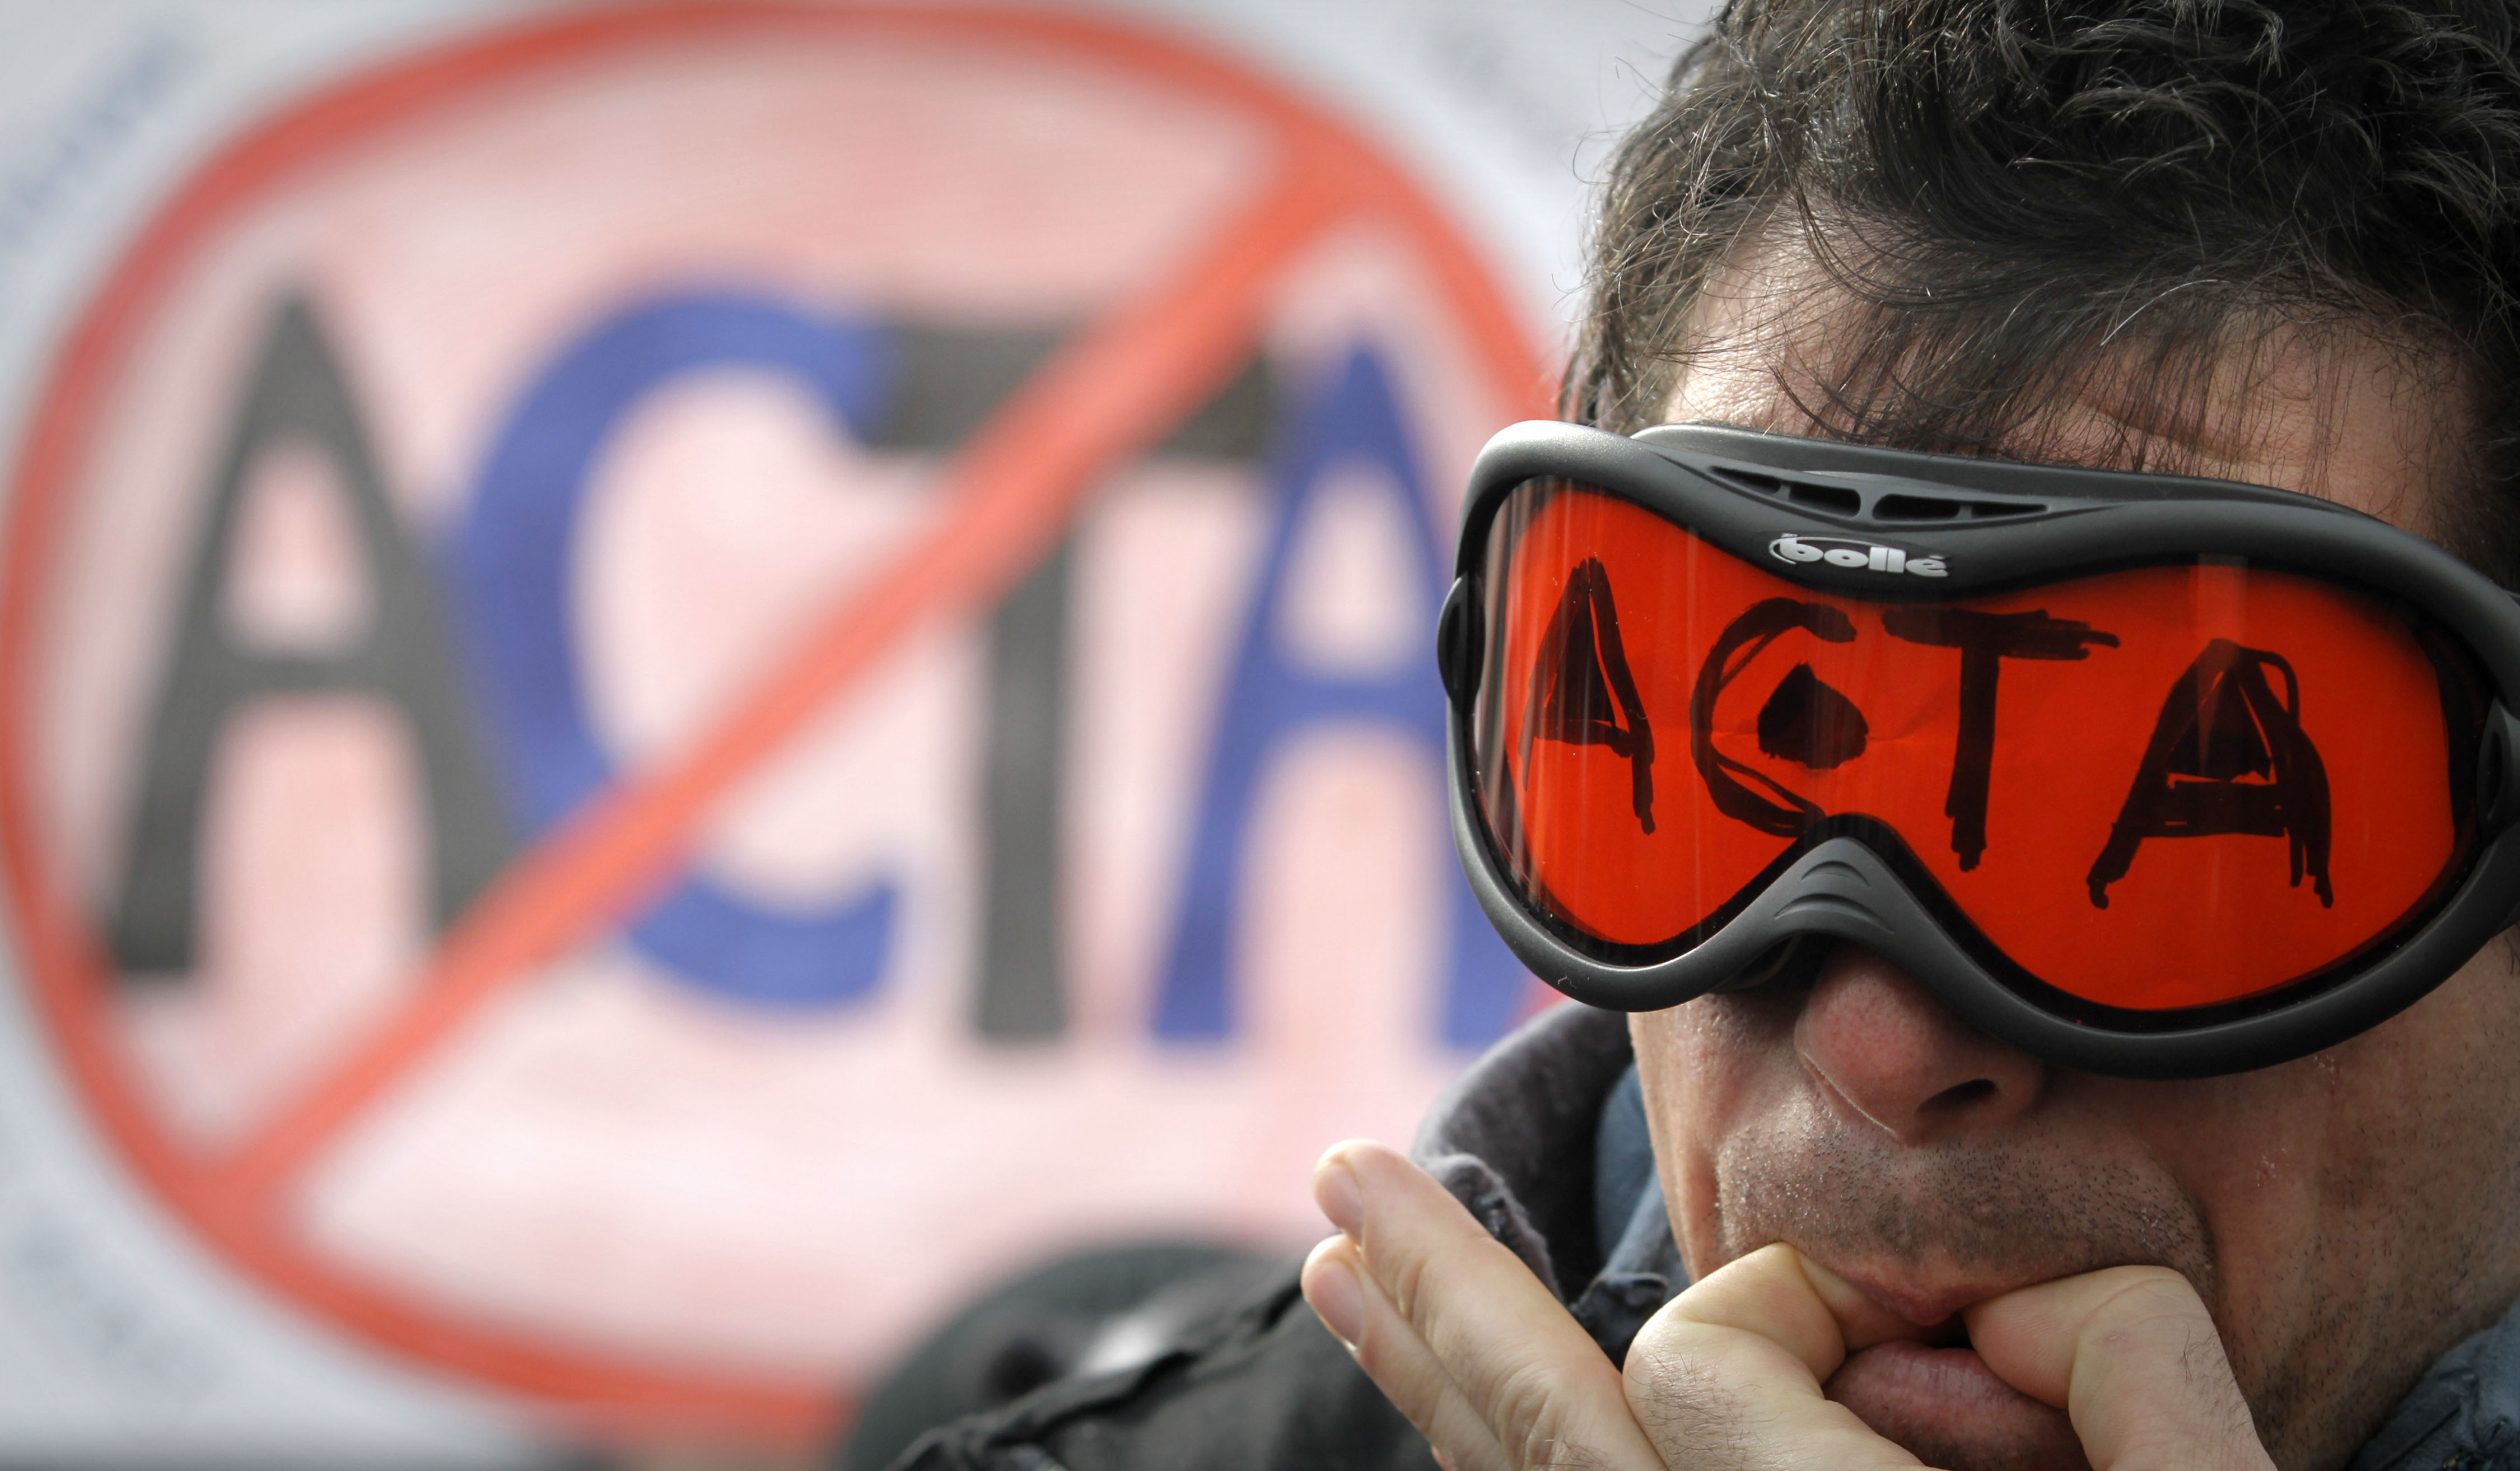 Acta fortsätter att ställa till med oreda bland EU-topparna.